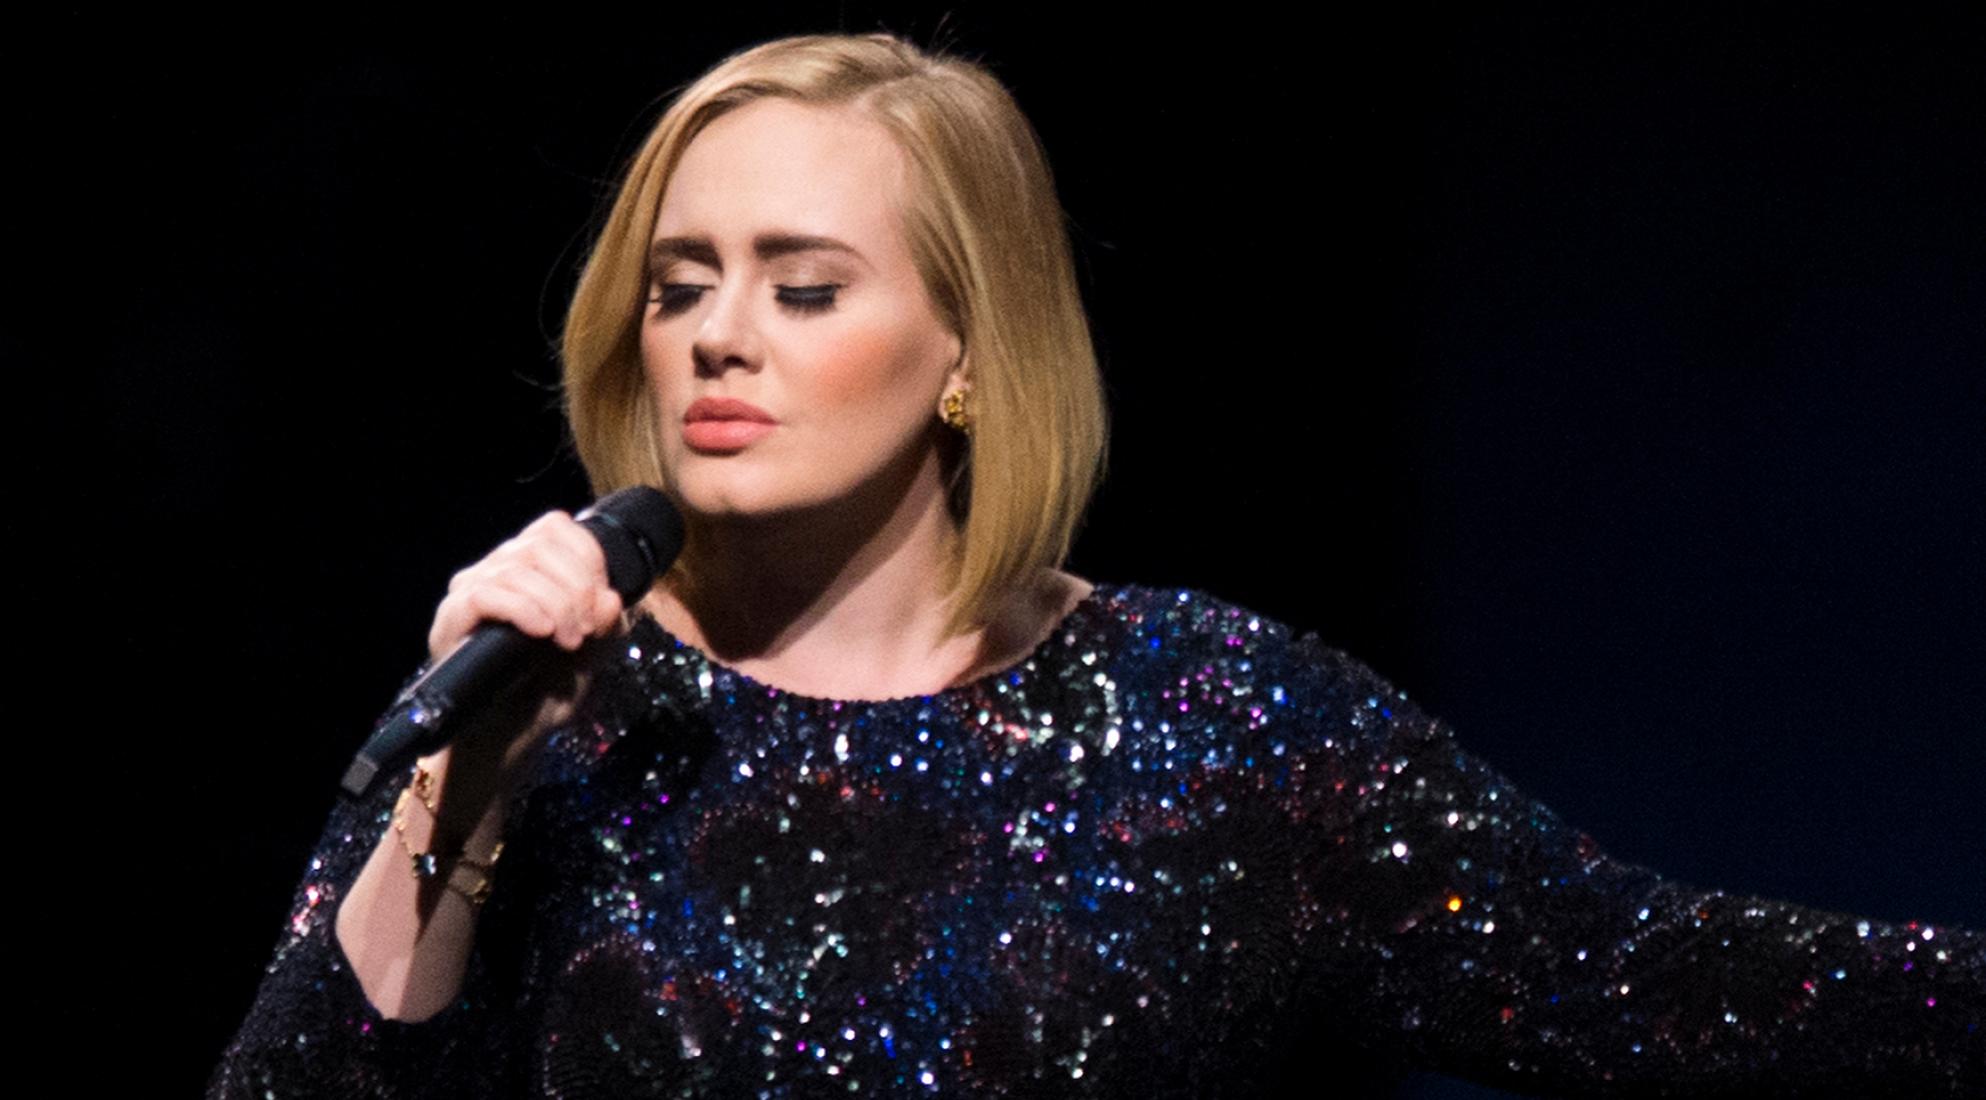 Adele rechazó $50 millones por hacer publicidad tras su cambio de imagen